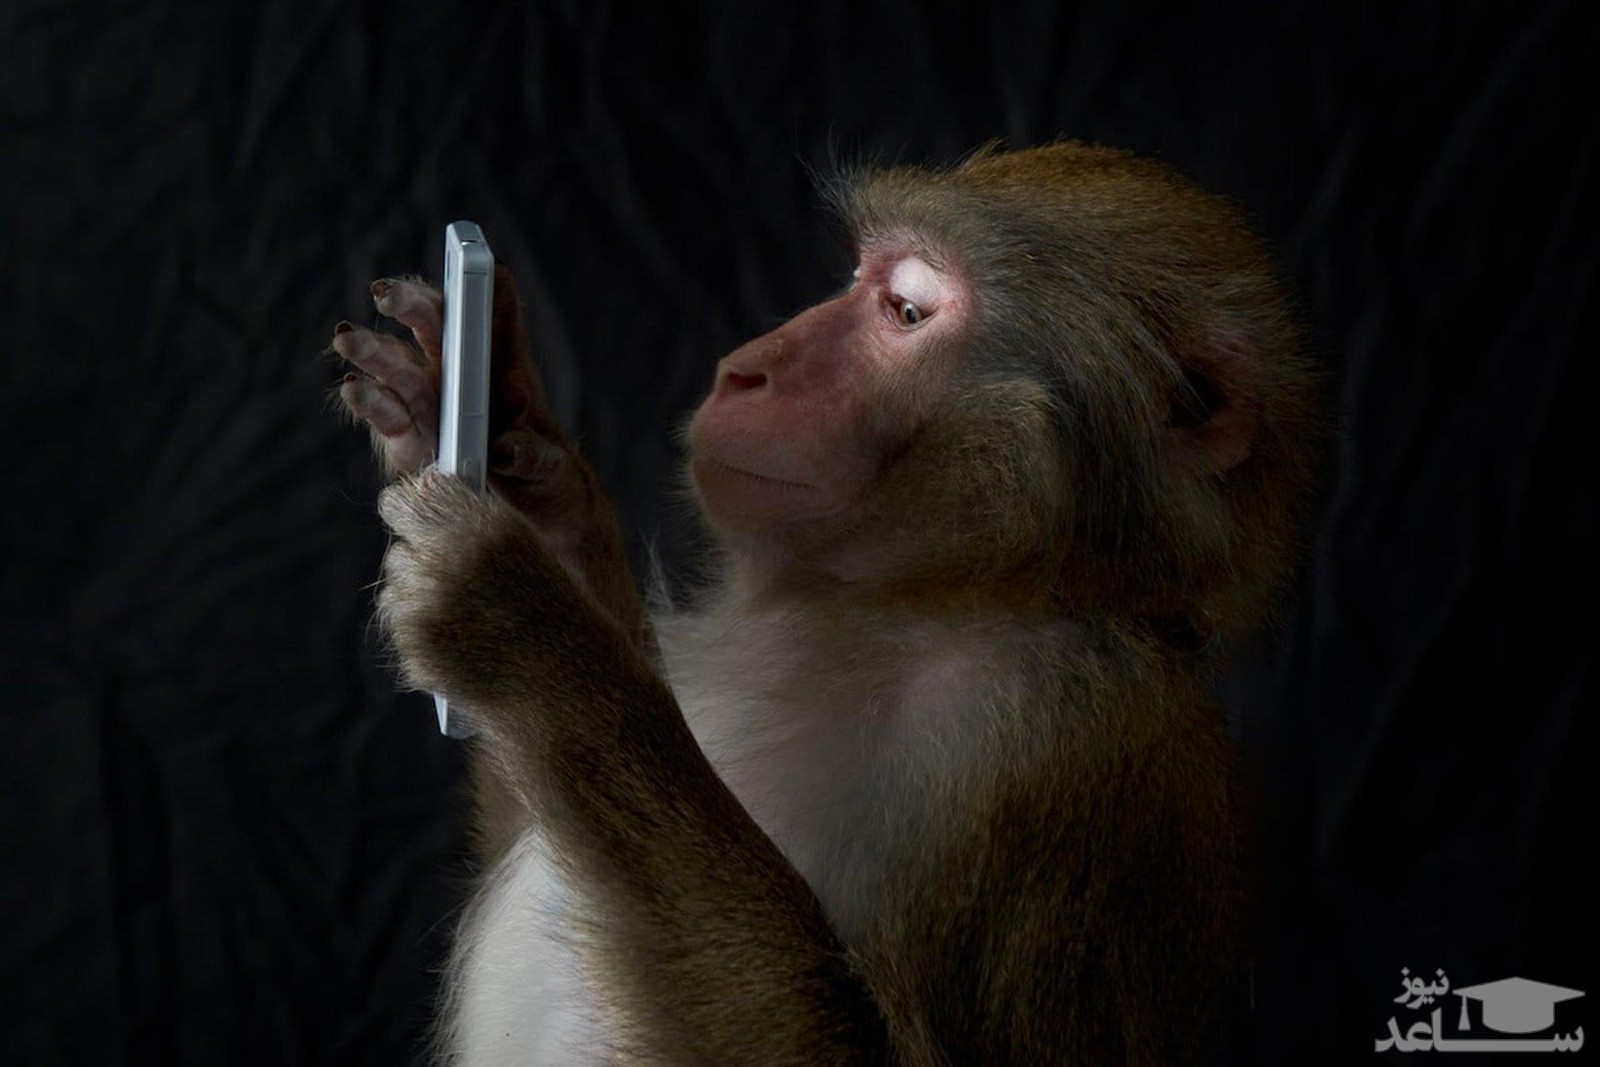 (فیلم) واکنش جالب میمون ها در مواجهه با سلفی تلفن همراه